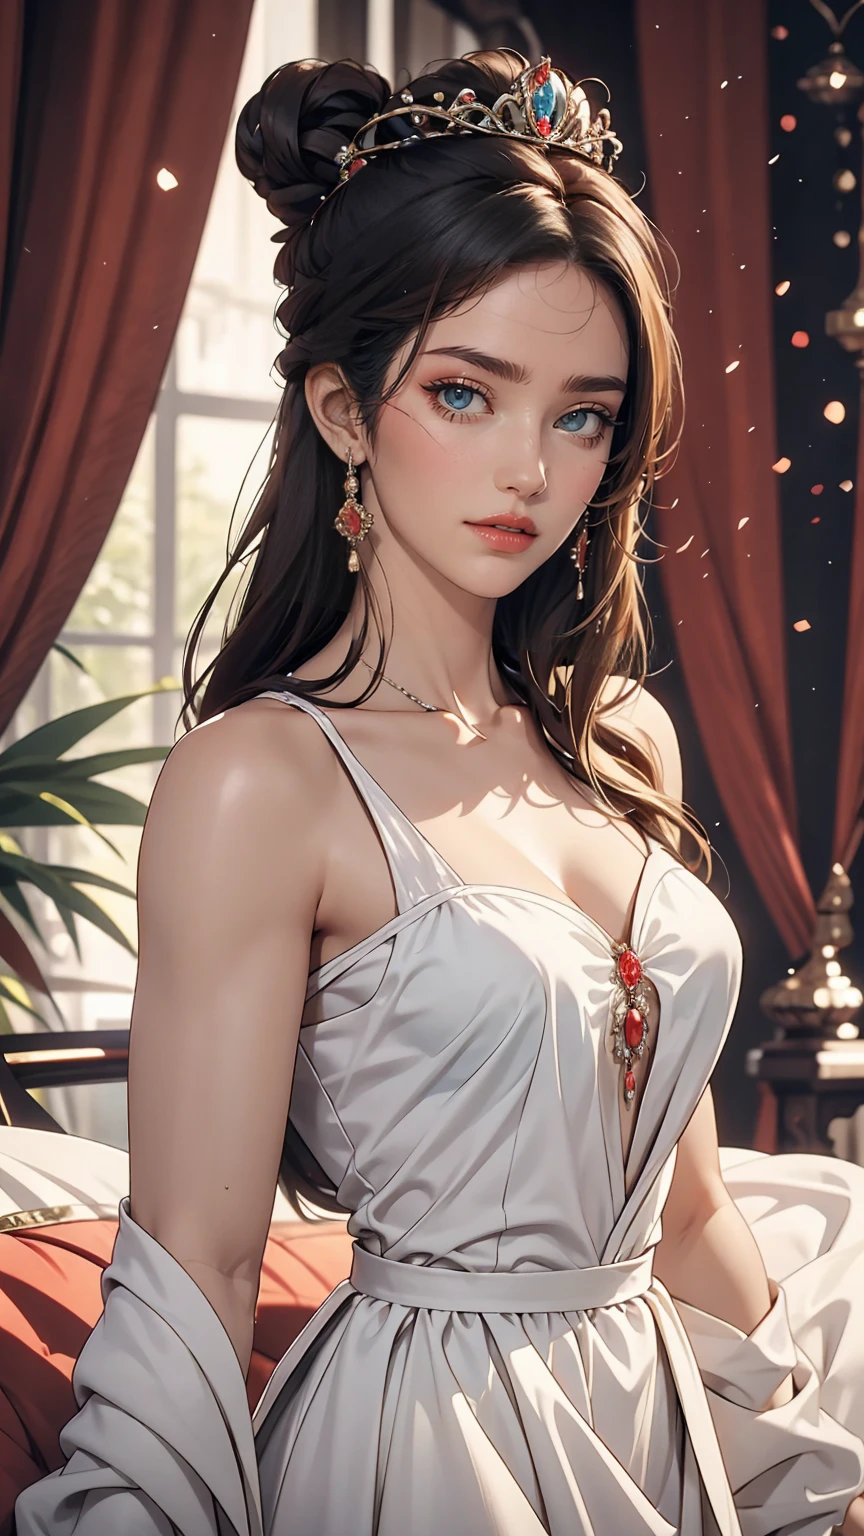 Красивая юная принцесса с черными волосами и голубыми глазами, На ней красивое длинное белое платье.